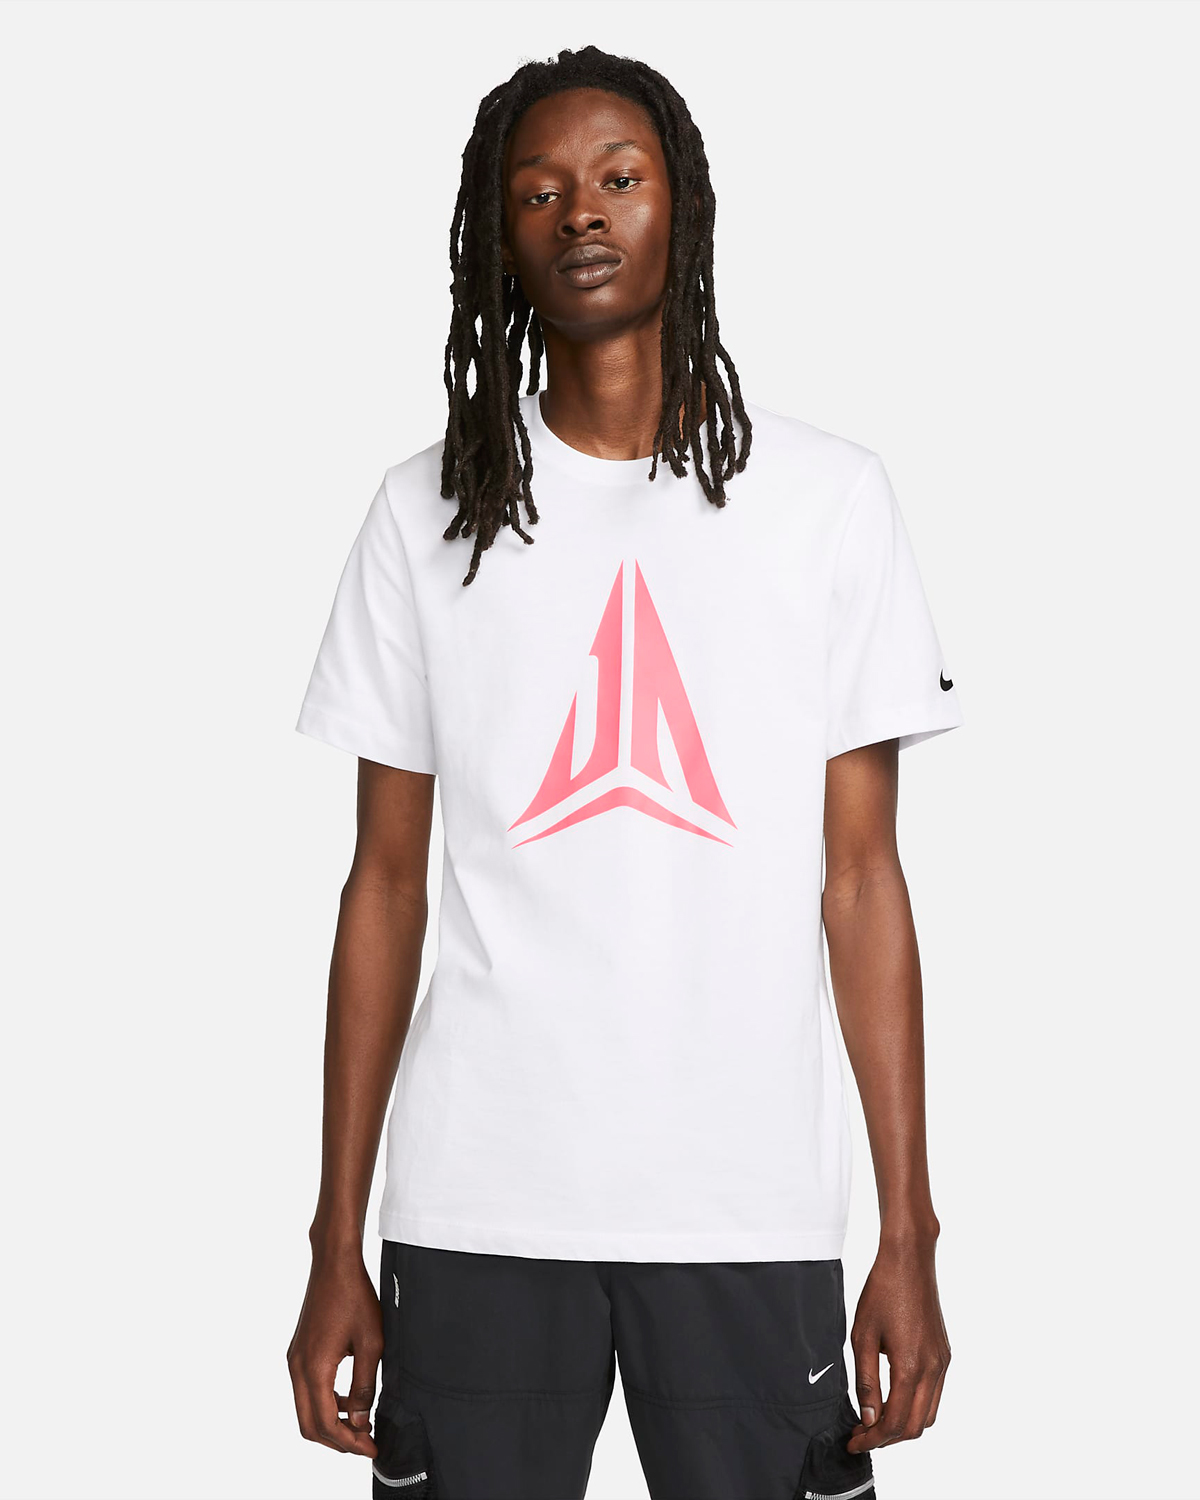 Nike-Ja-1-Shirt-White-Pink